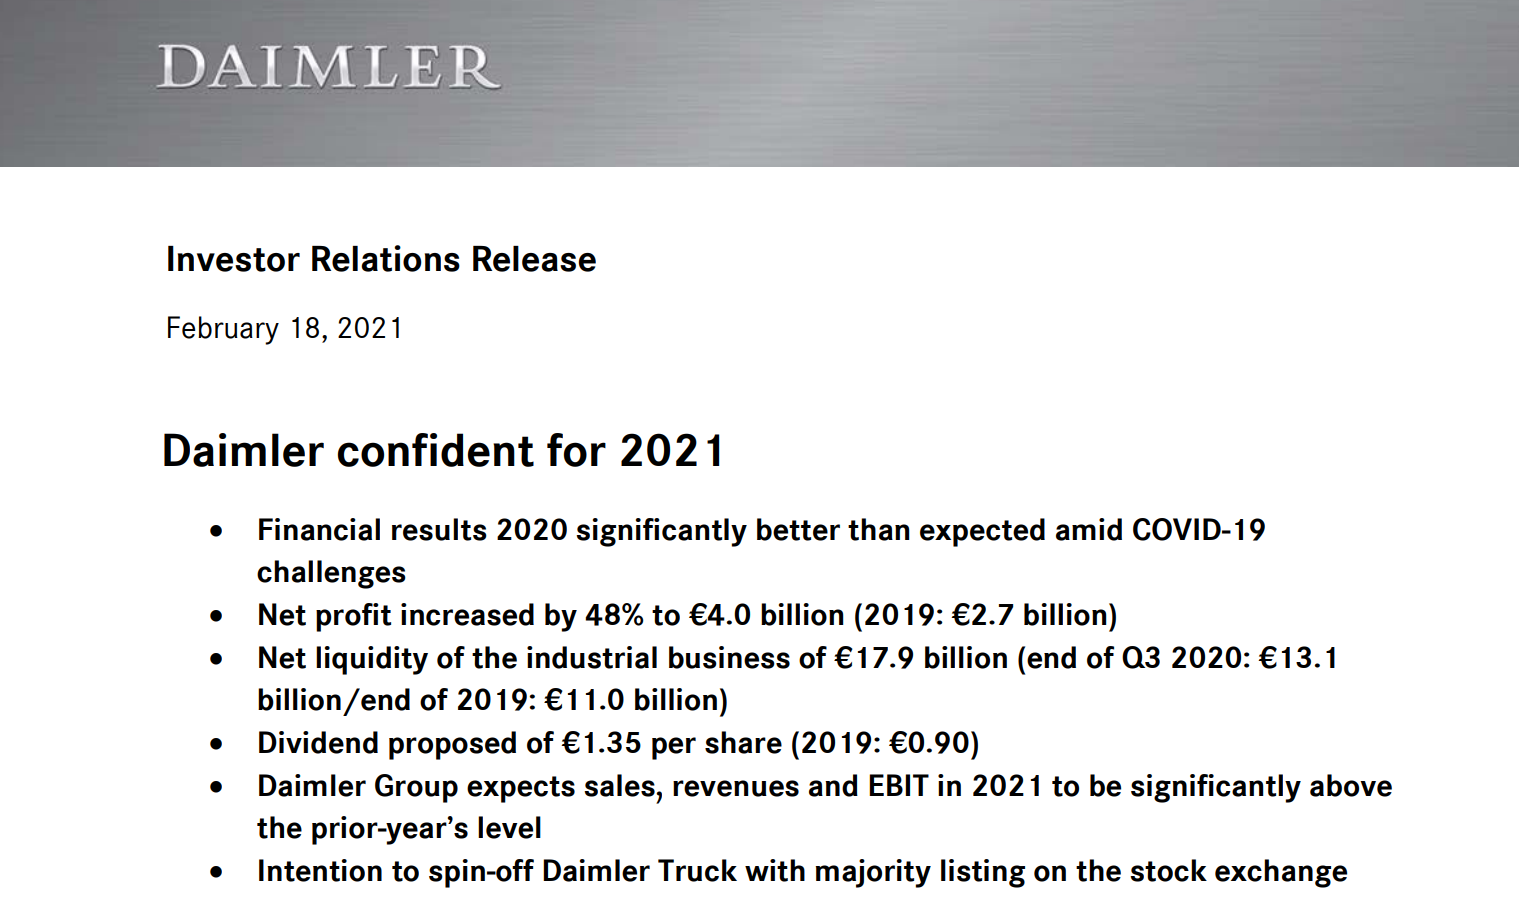 戴姆勒预期芯片短缺不会影响今年产量 料2021年业绩明显提升